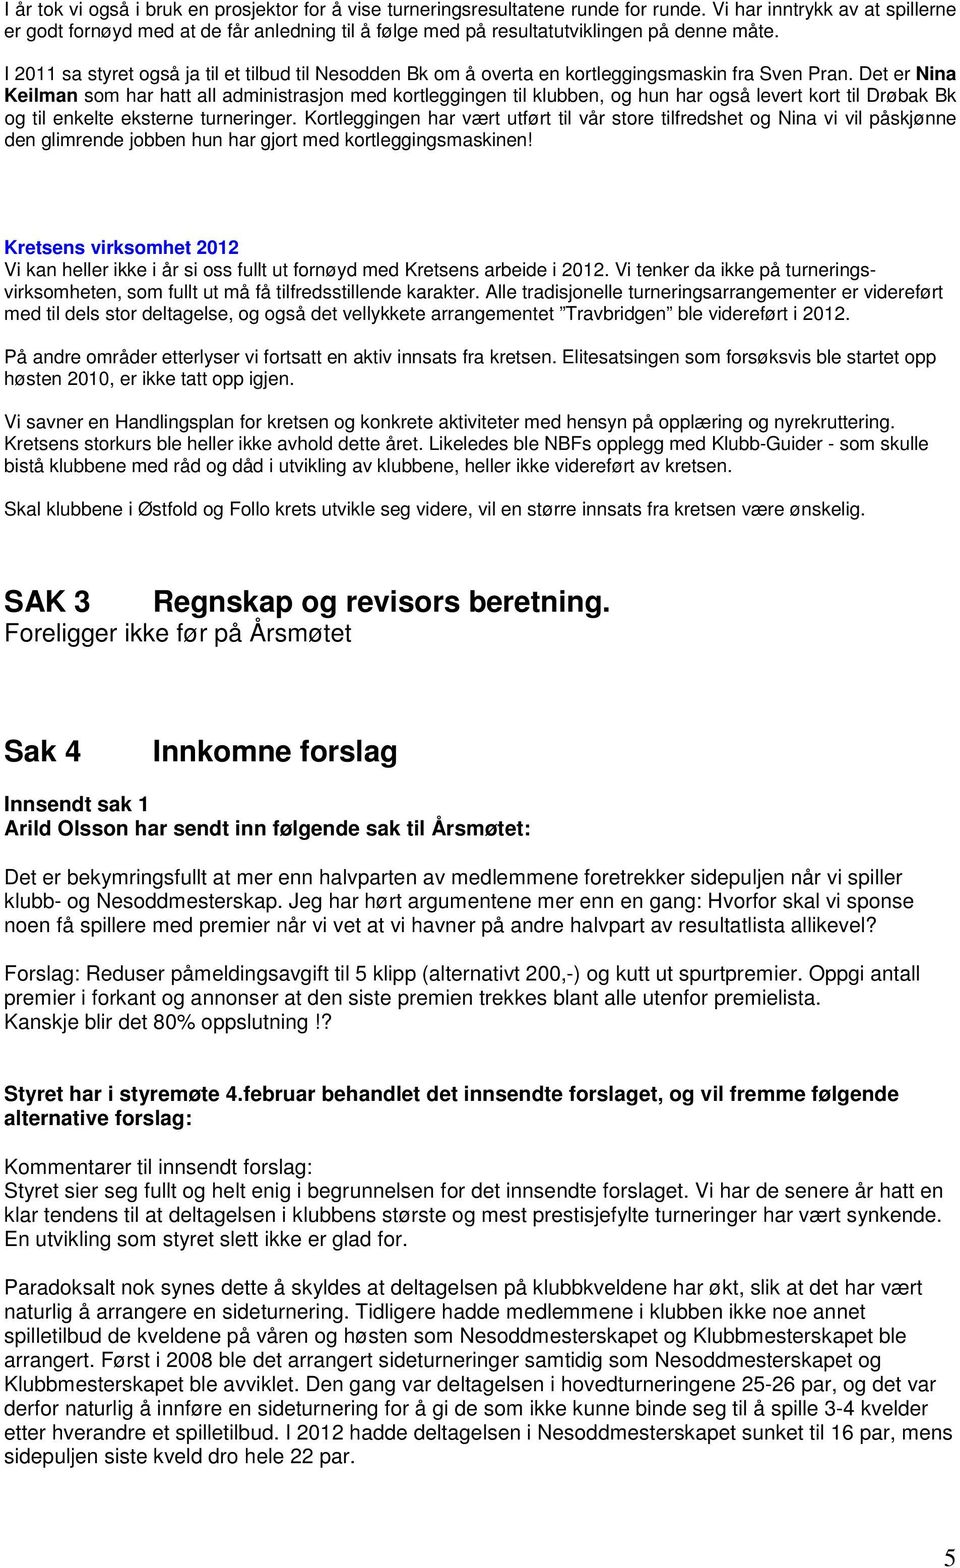 I 2011 sa styret også ja til et tilbud til Nesodden Bk om å overta en kortleggingsmaskin fra Sven Pran.